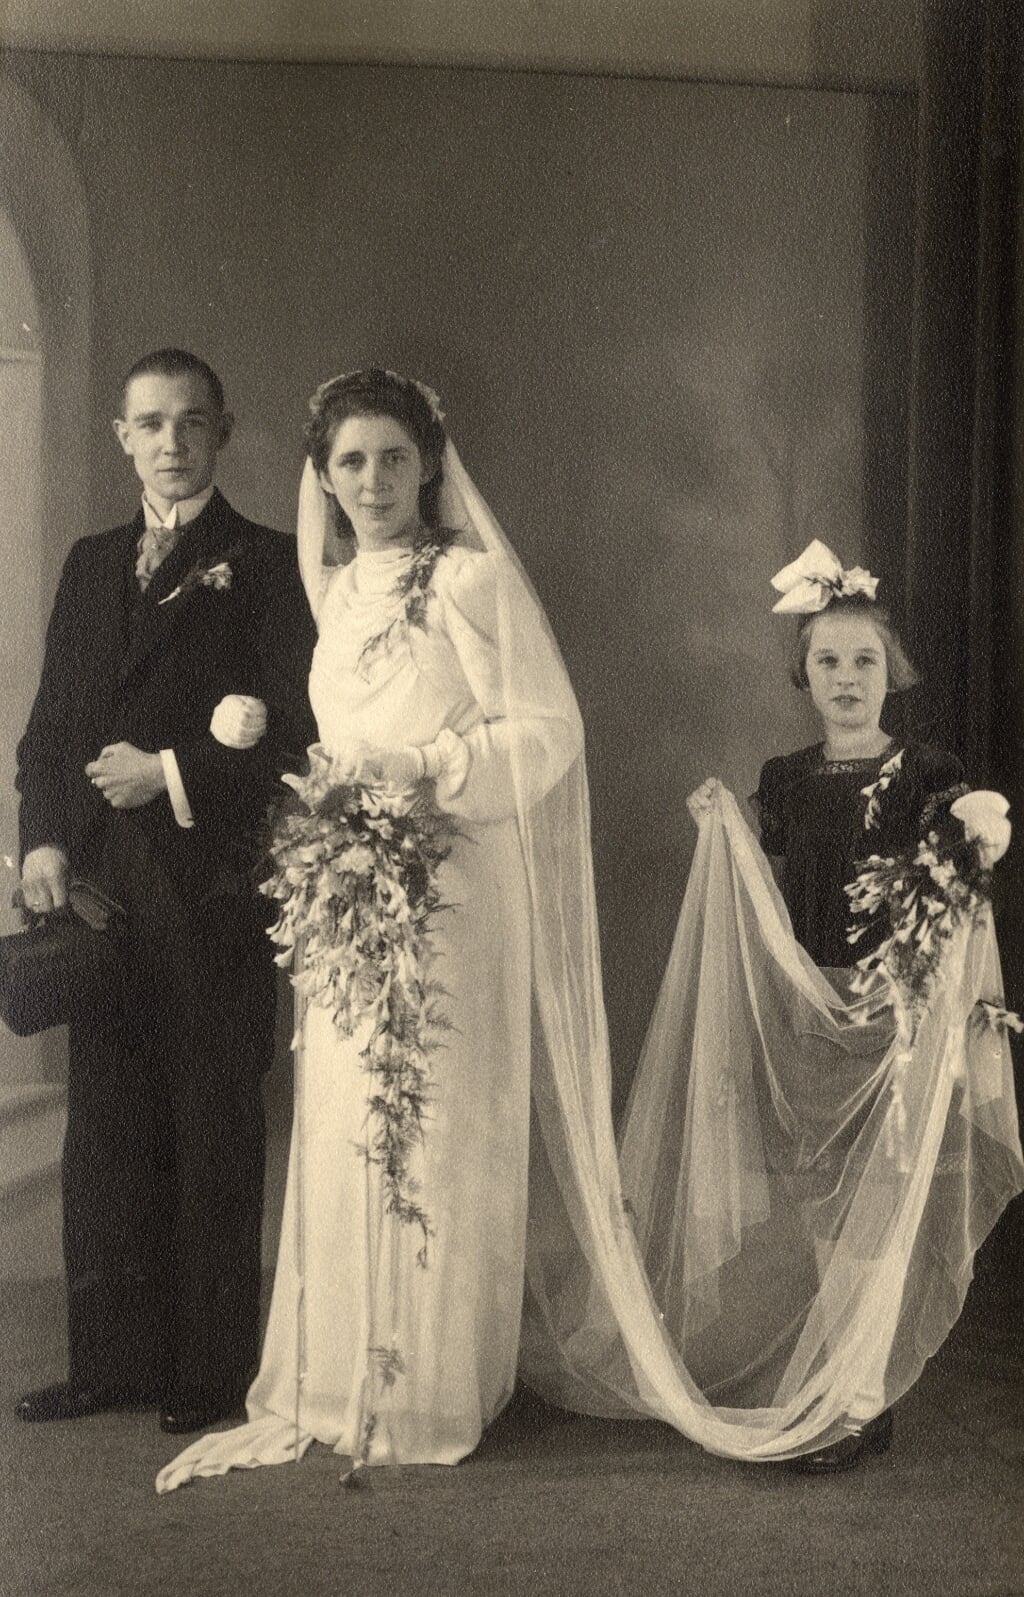 De huwelijksfoto van Jan Romijn en Alie Buurman.
